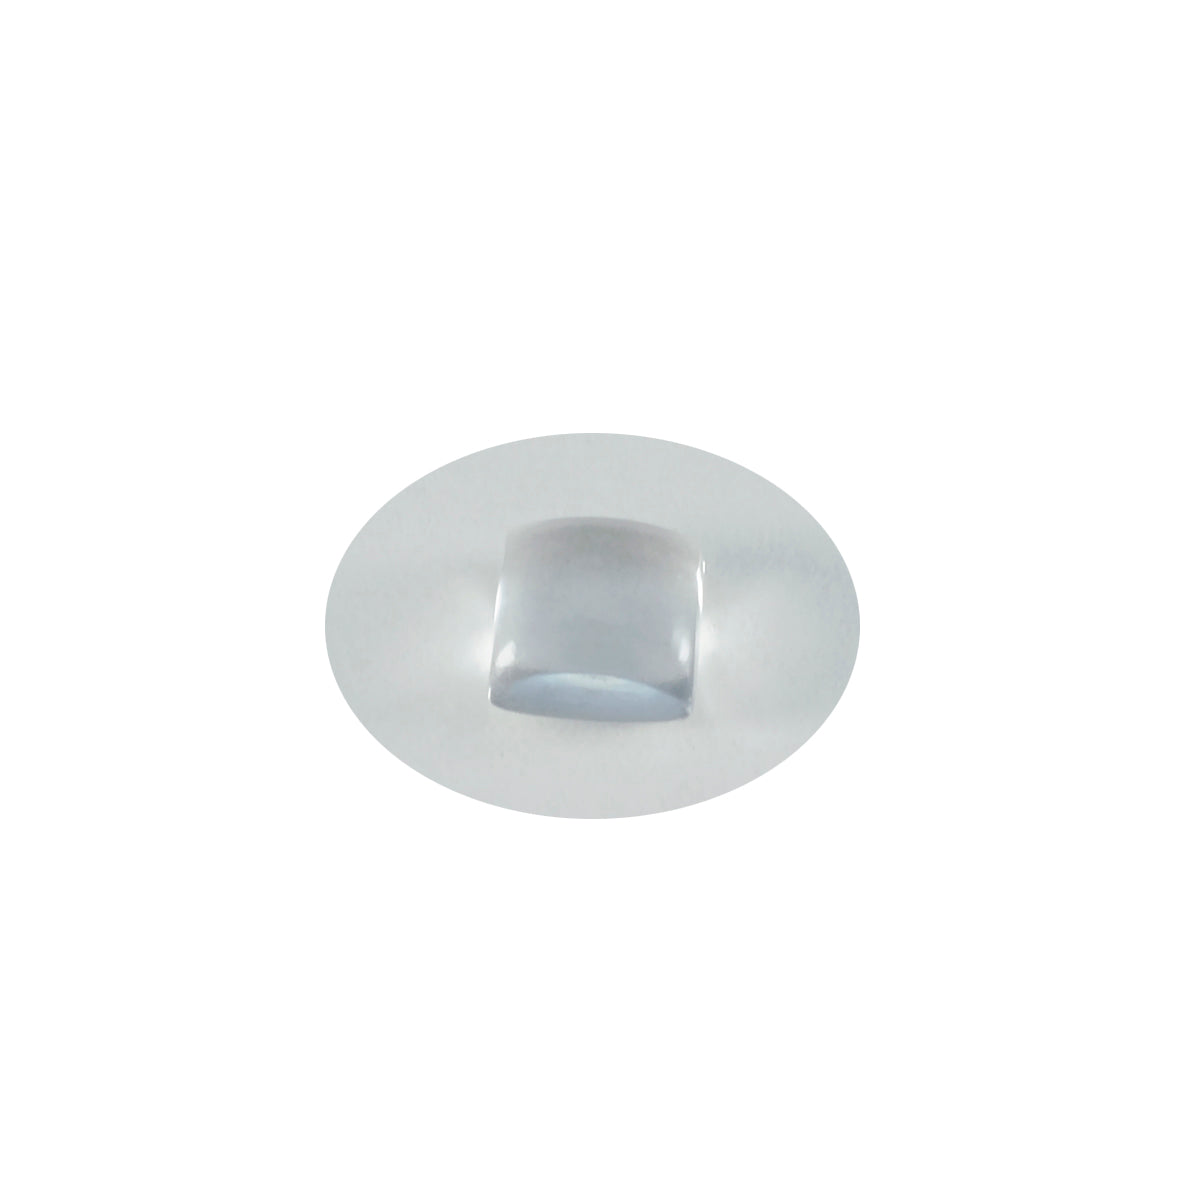 riyogems 1 шт. белый кристалл кварцевый кабошон 10x10 мм квадратной формы красивый качественный свободный камень